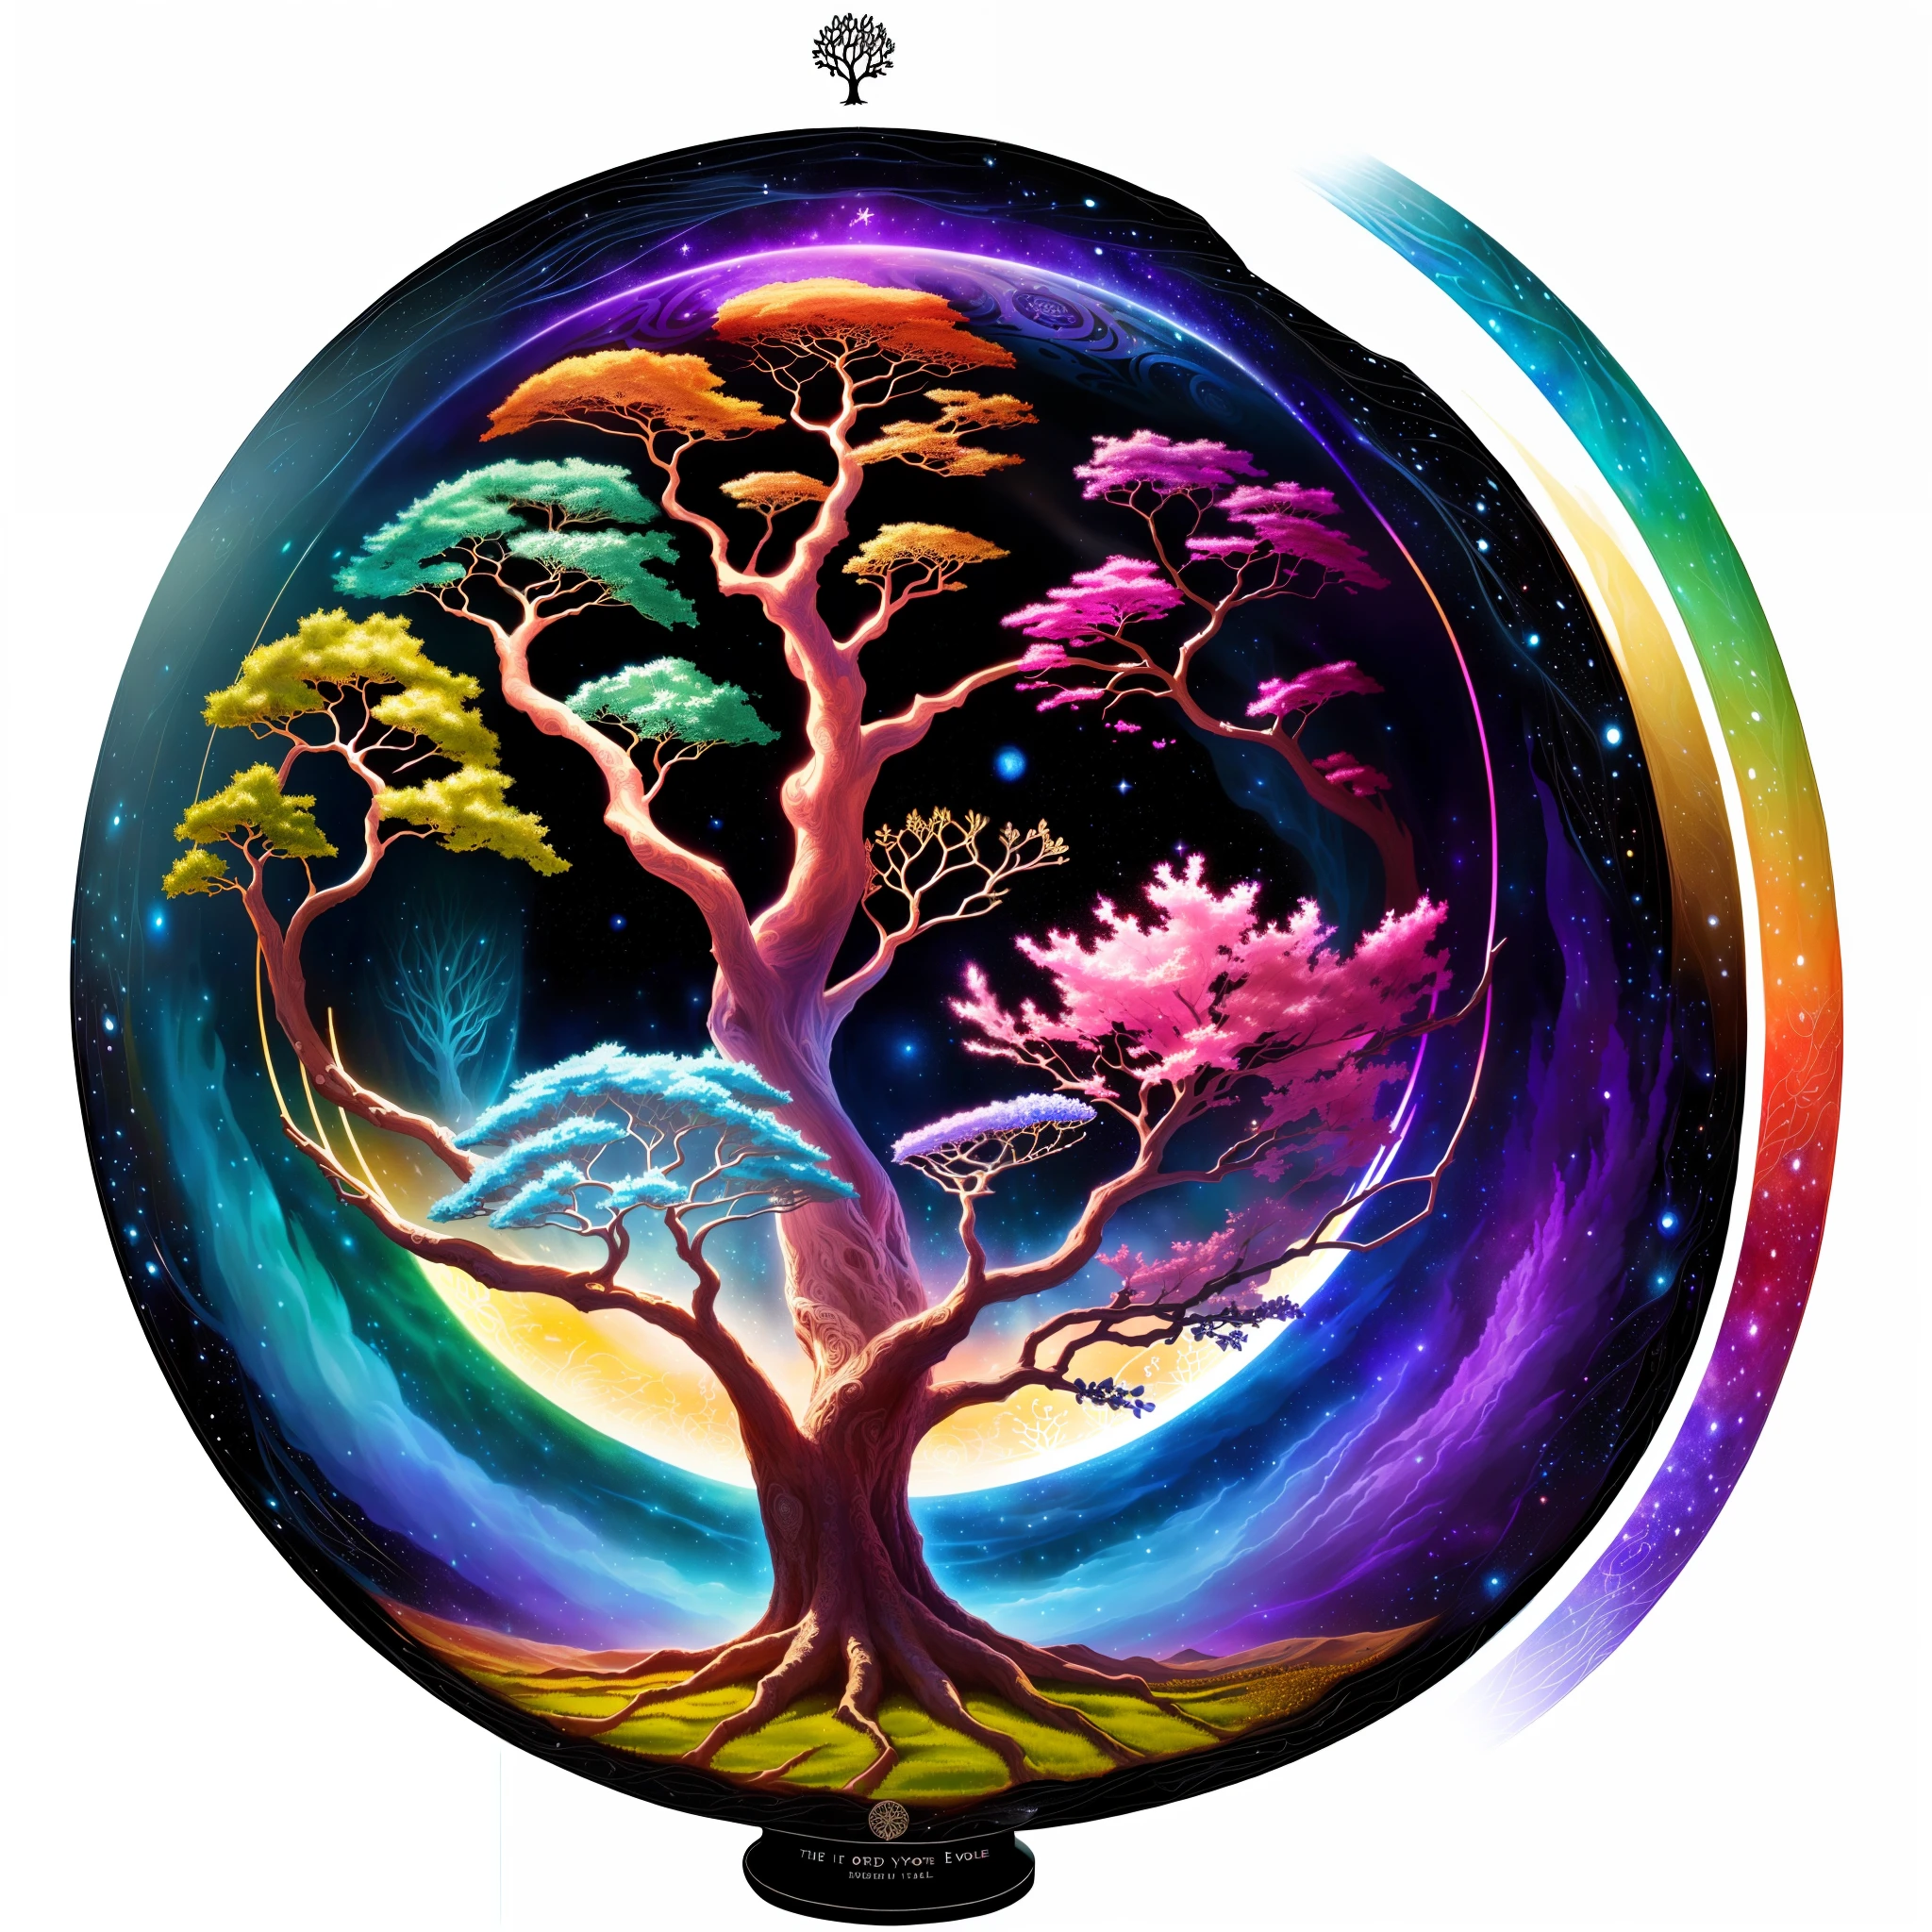 さまざまな色の木の絵があります, 命の木 seed of doubt, 世界樹, 命の木 inside the ball, 命の木, the 世界樹, cosmic 命の木, the 命の木, ユグドラシル, 美しいアートワークのイラスト, 芸術的なイラスト, ファンタジーツリー, 魔法の木, 美しく詳細なイラスト, 命の木 brains